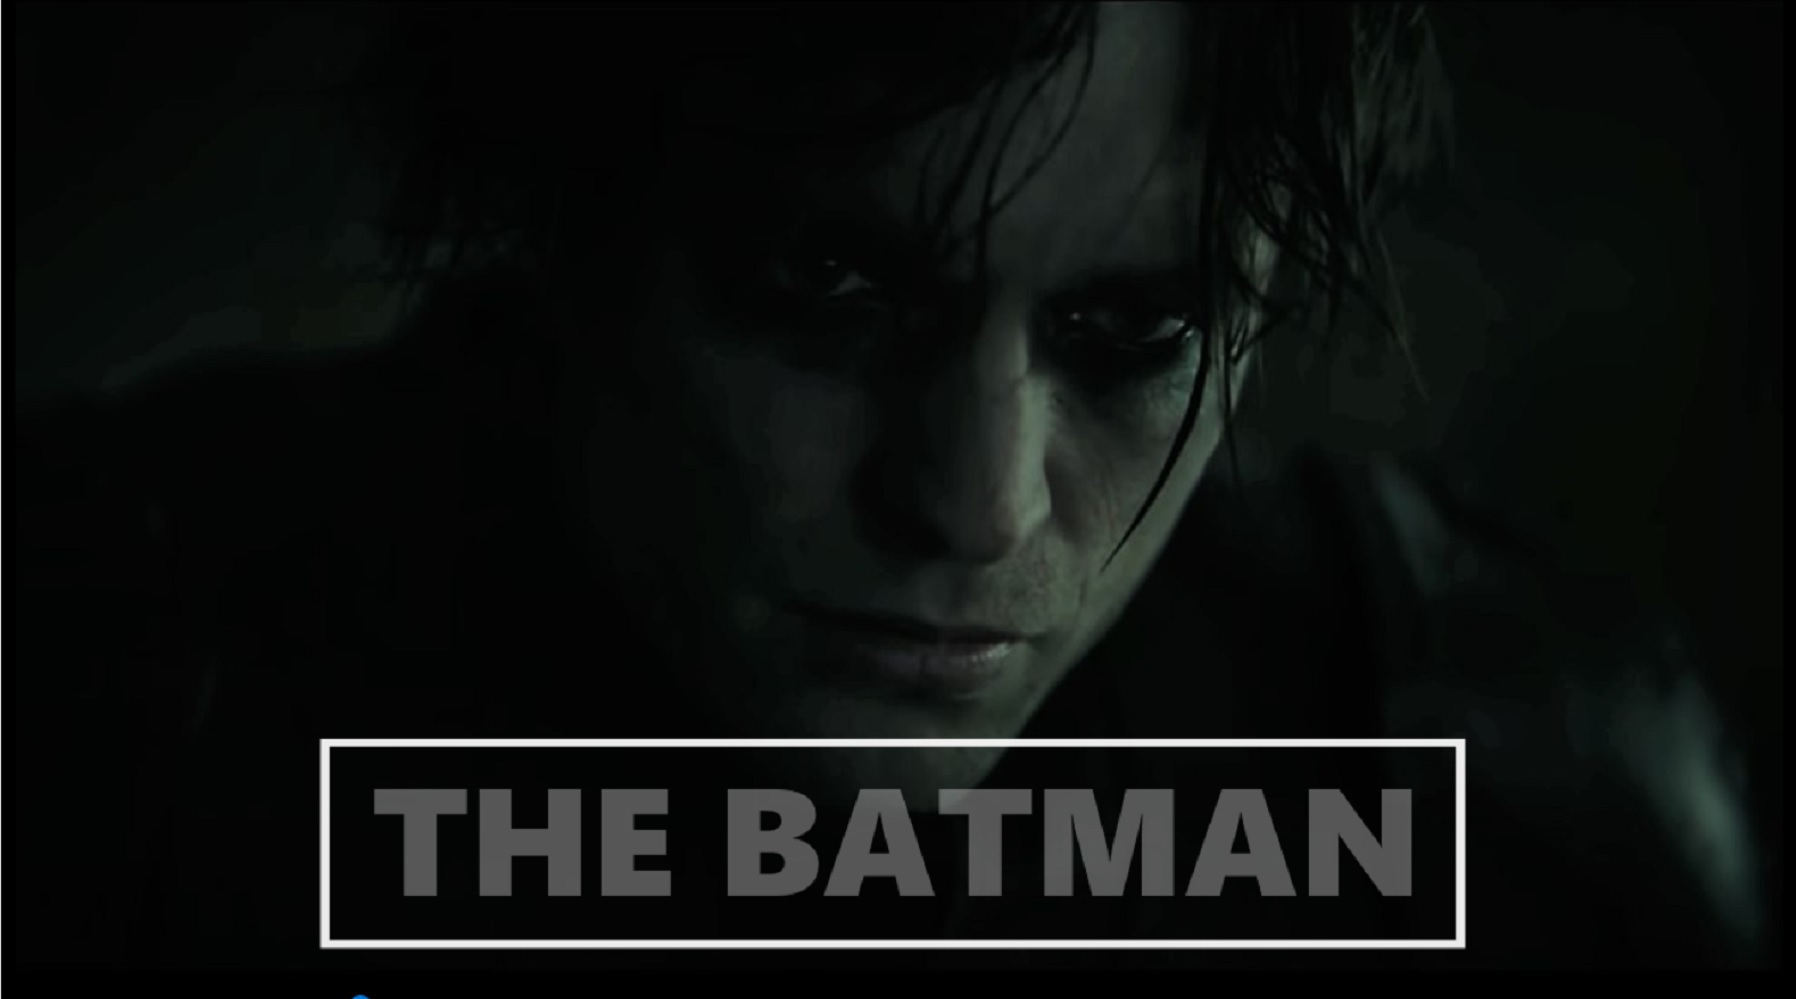 The Batman 2022 Release Date Cast Budget Trailer Production